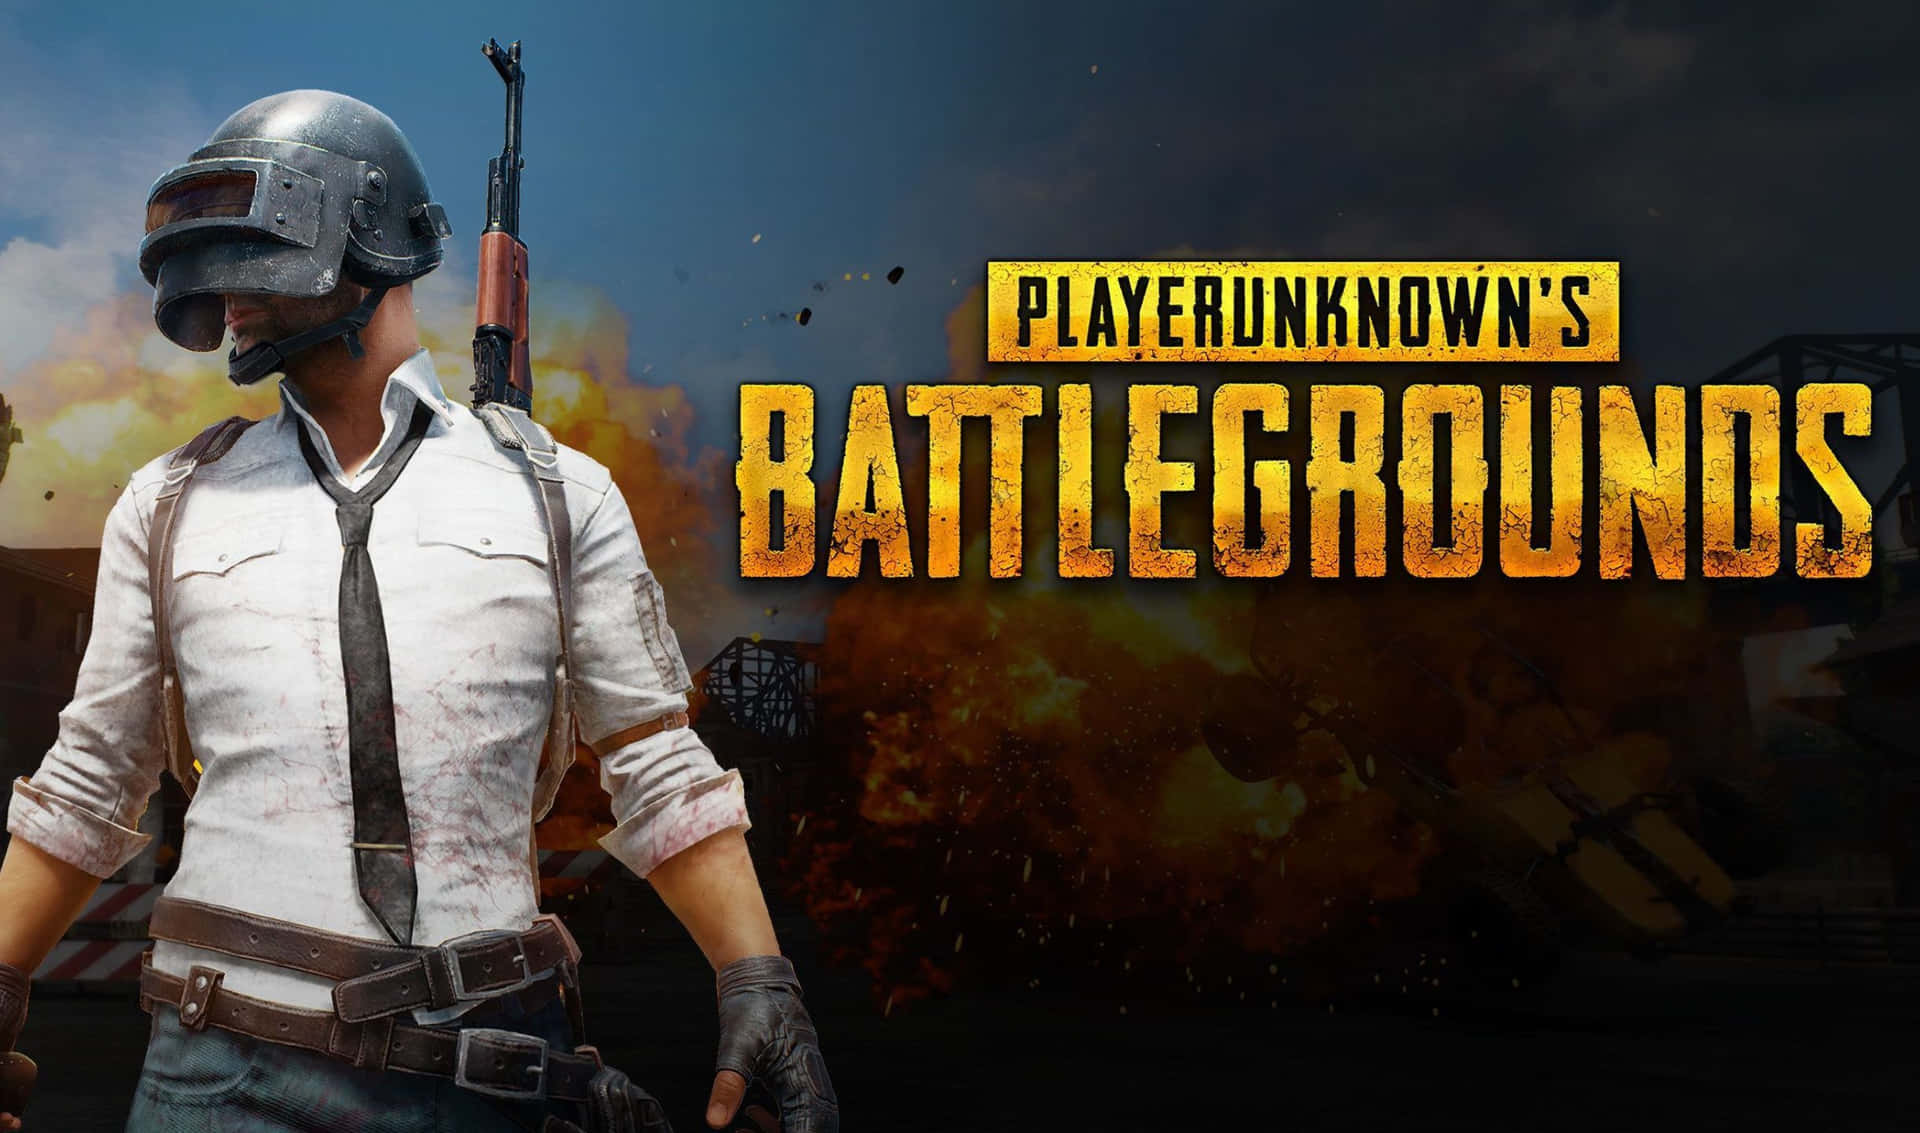 2440x1440 Playerunknown's Battlegrounds Background